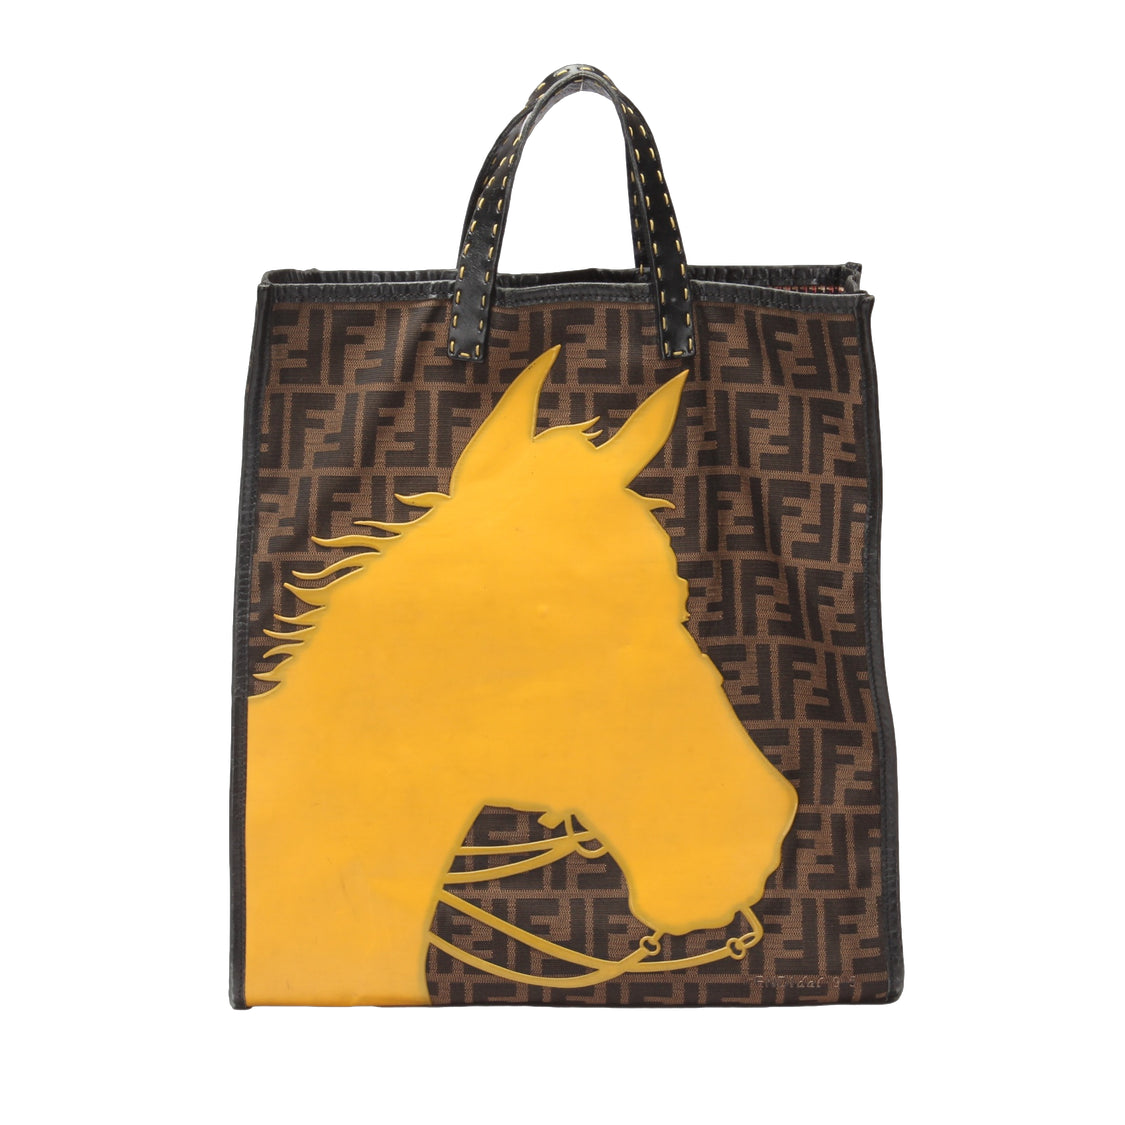 Fendi Selleria Zucca Horse Tote Canvas Handbag in Fair condition